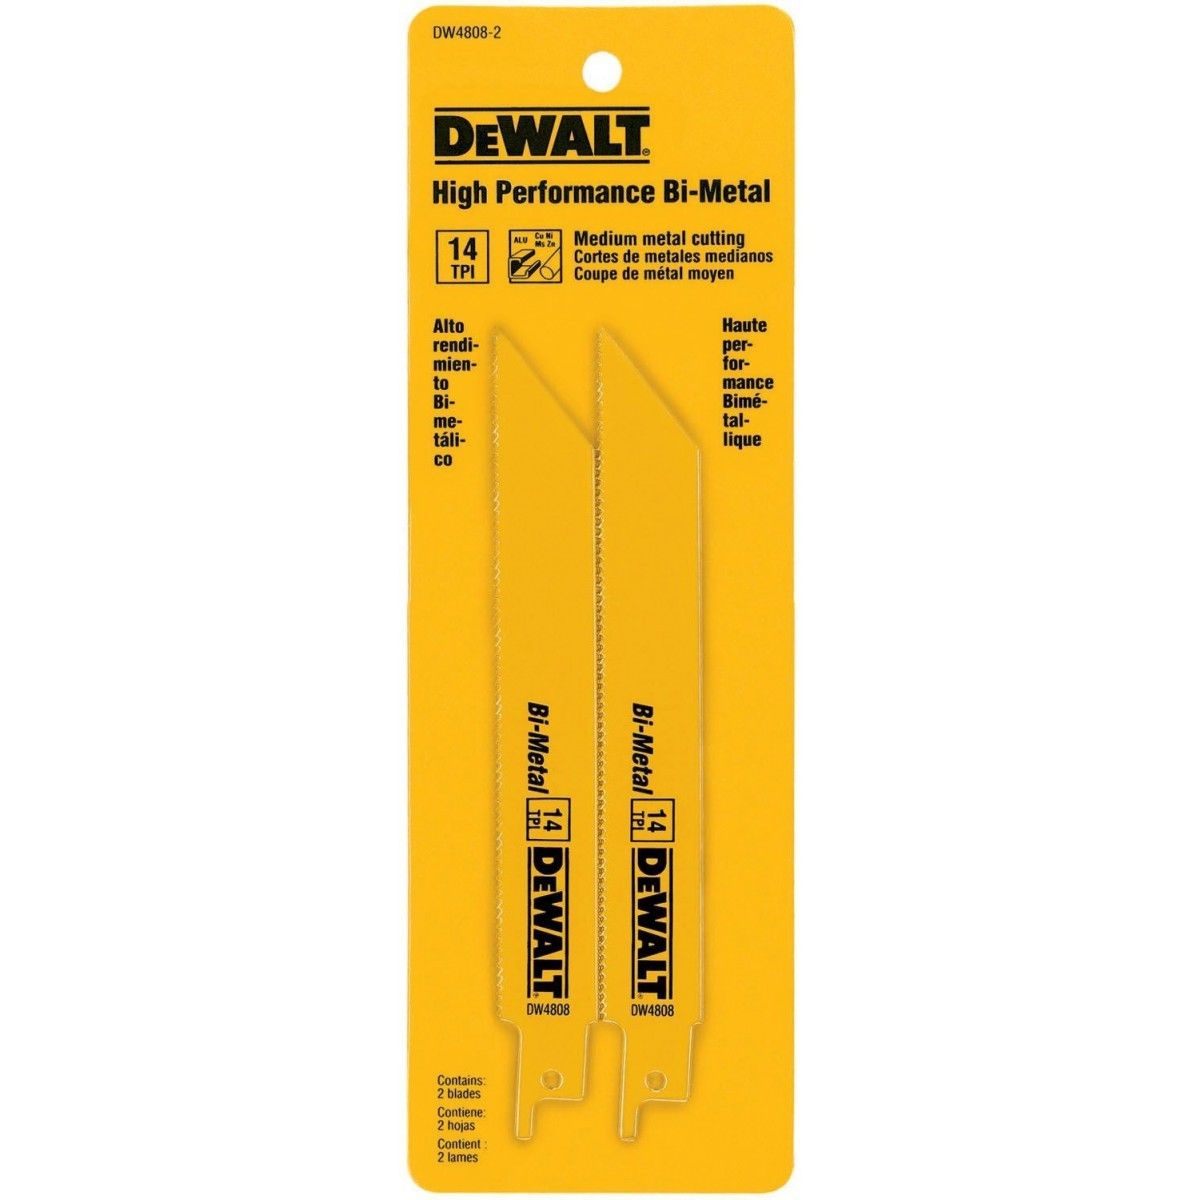 Dewalt DW4808-2 6" x 14 TPI HP Bi-Metal Reciprocating Saw Blades USA